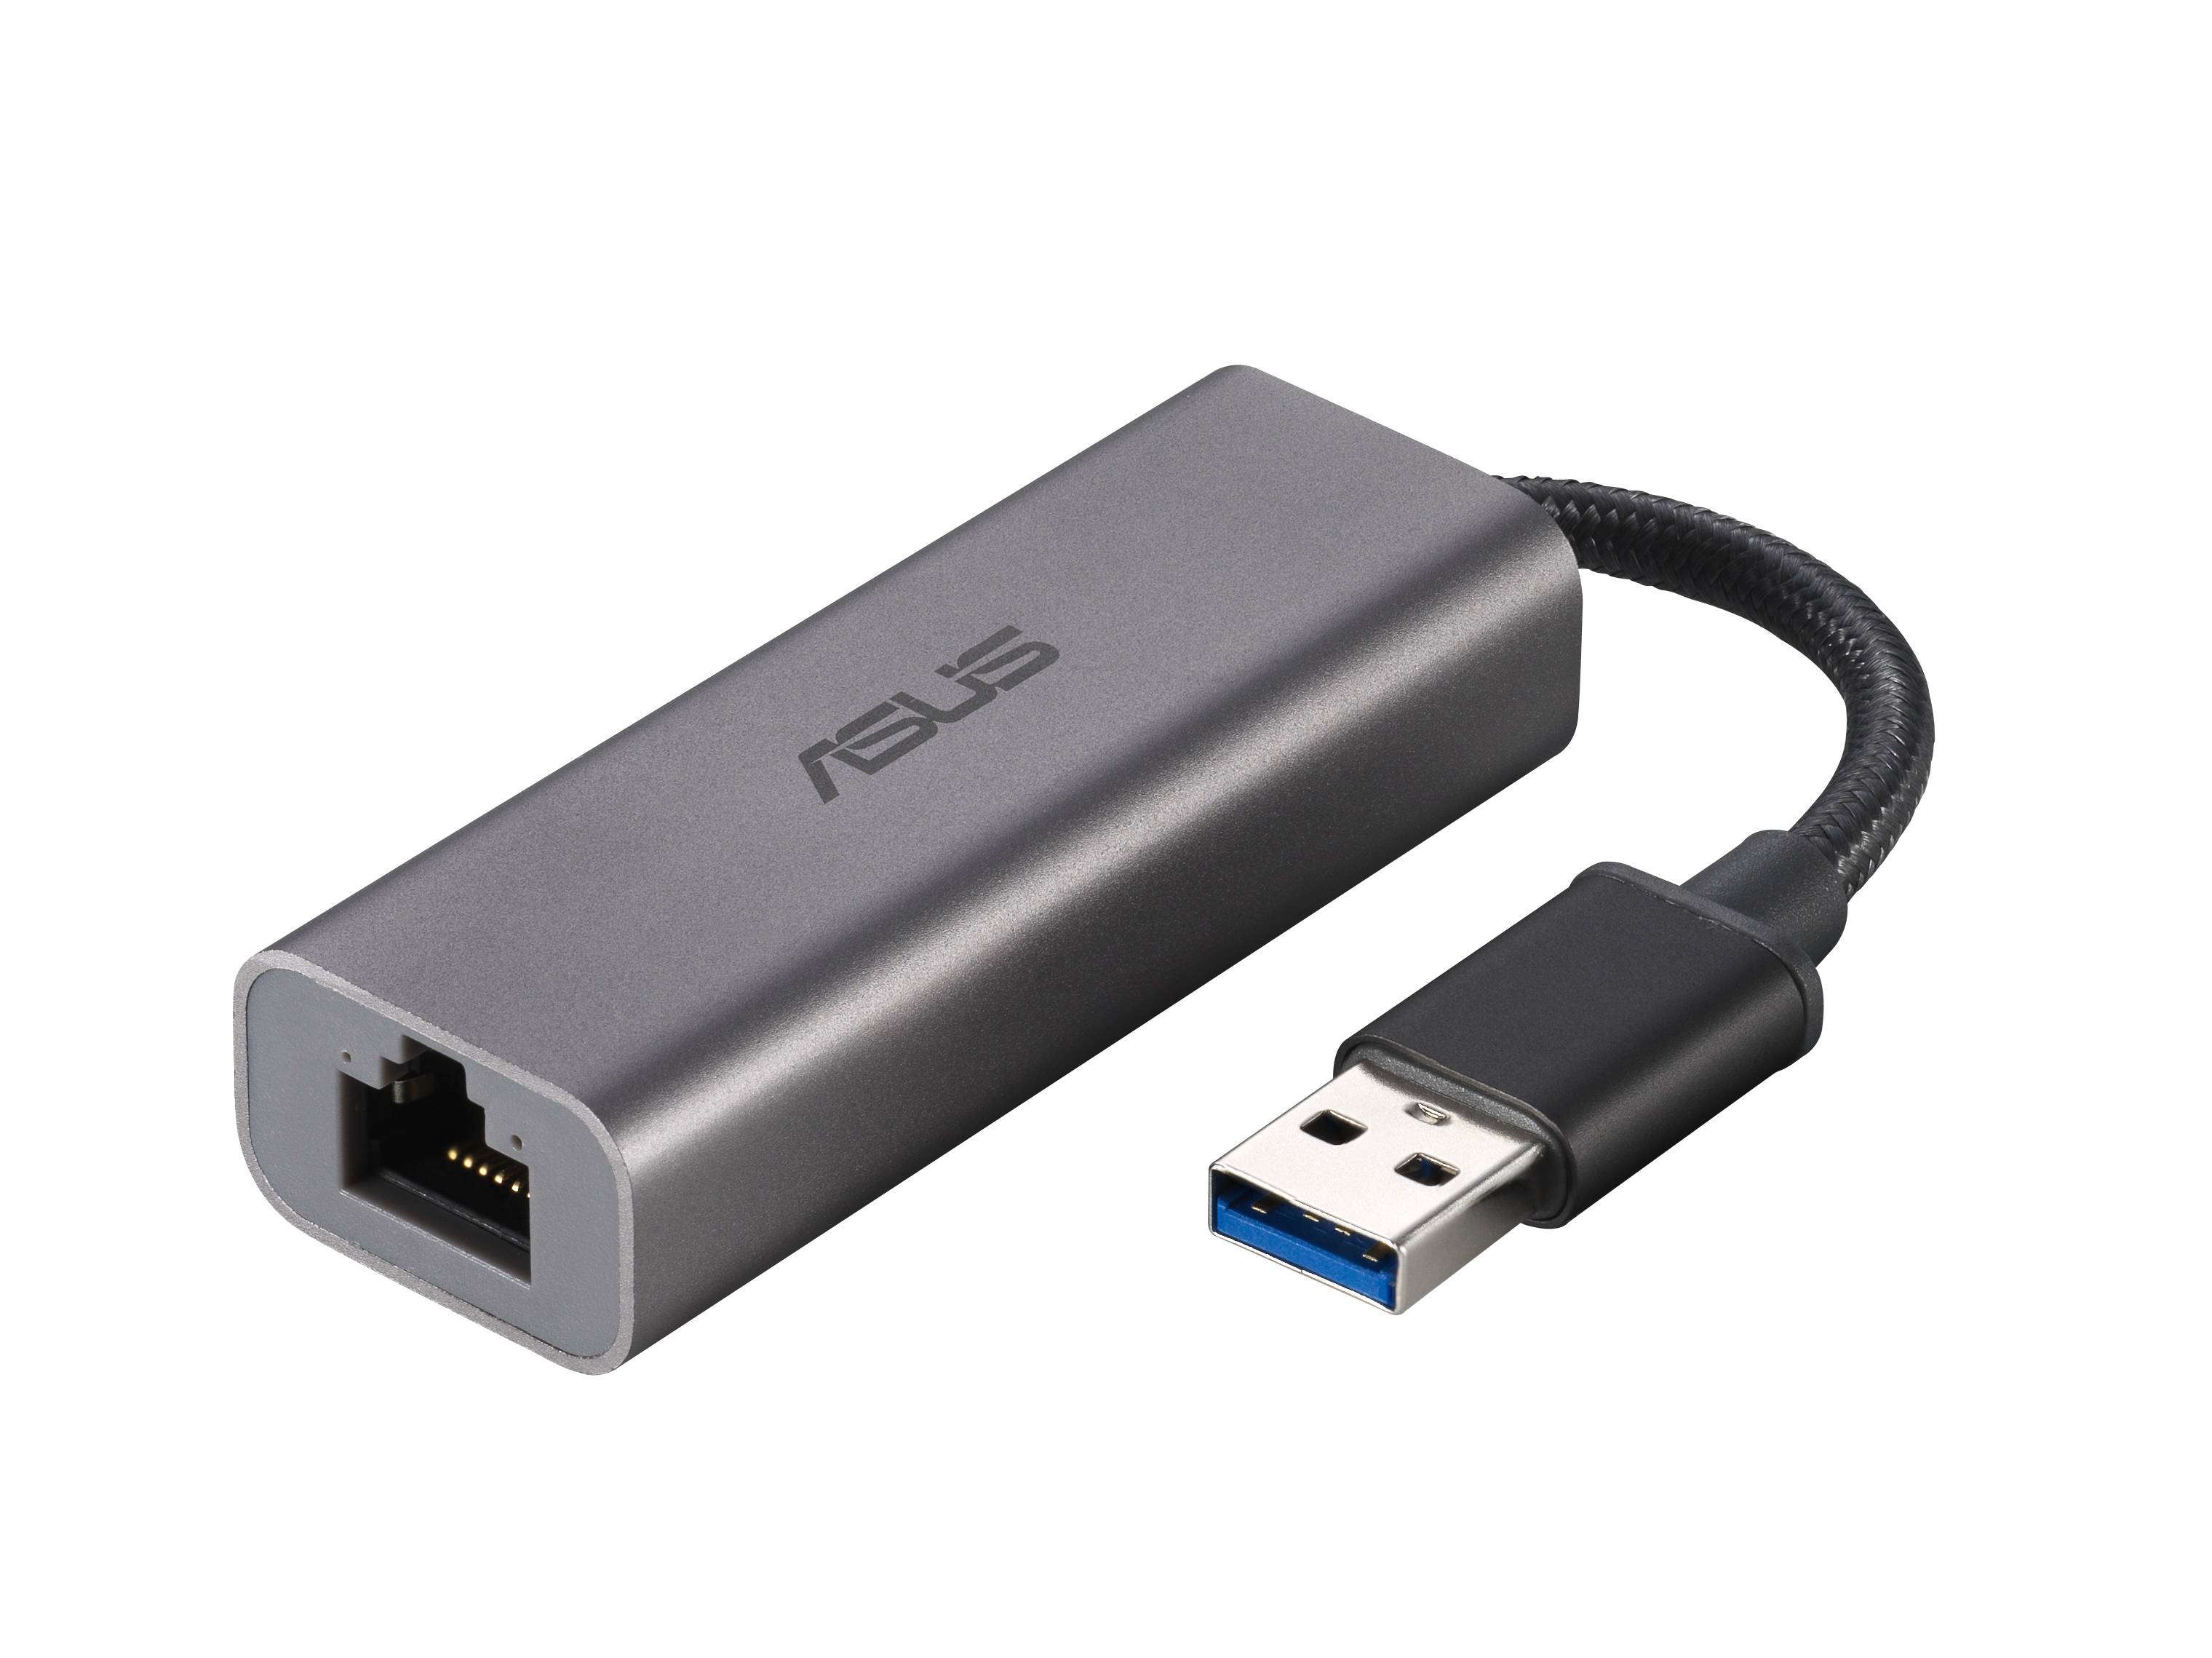 Rca Informatique - image du produit : USB-C2500 USB TYP-A 2.5GBIT/S BASE-T